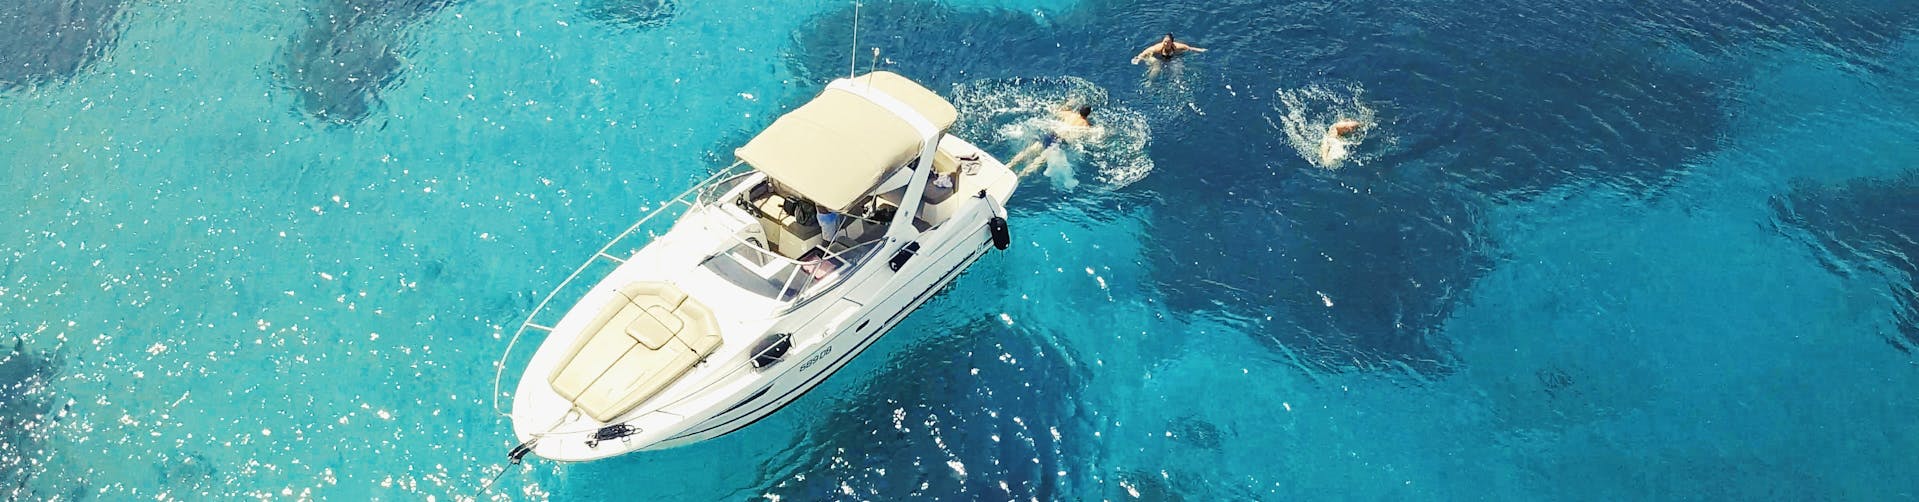 Barca nelle acque limpide durante la gita privata di mezza giornata con una barca a motore di lusso alle isole Elafiti da Dubrovnik organizzata da Snooky Tours Dubrovnik.